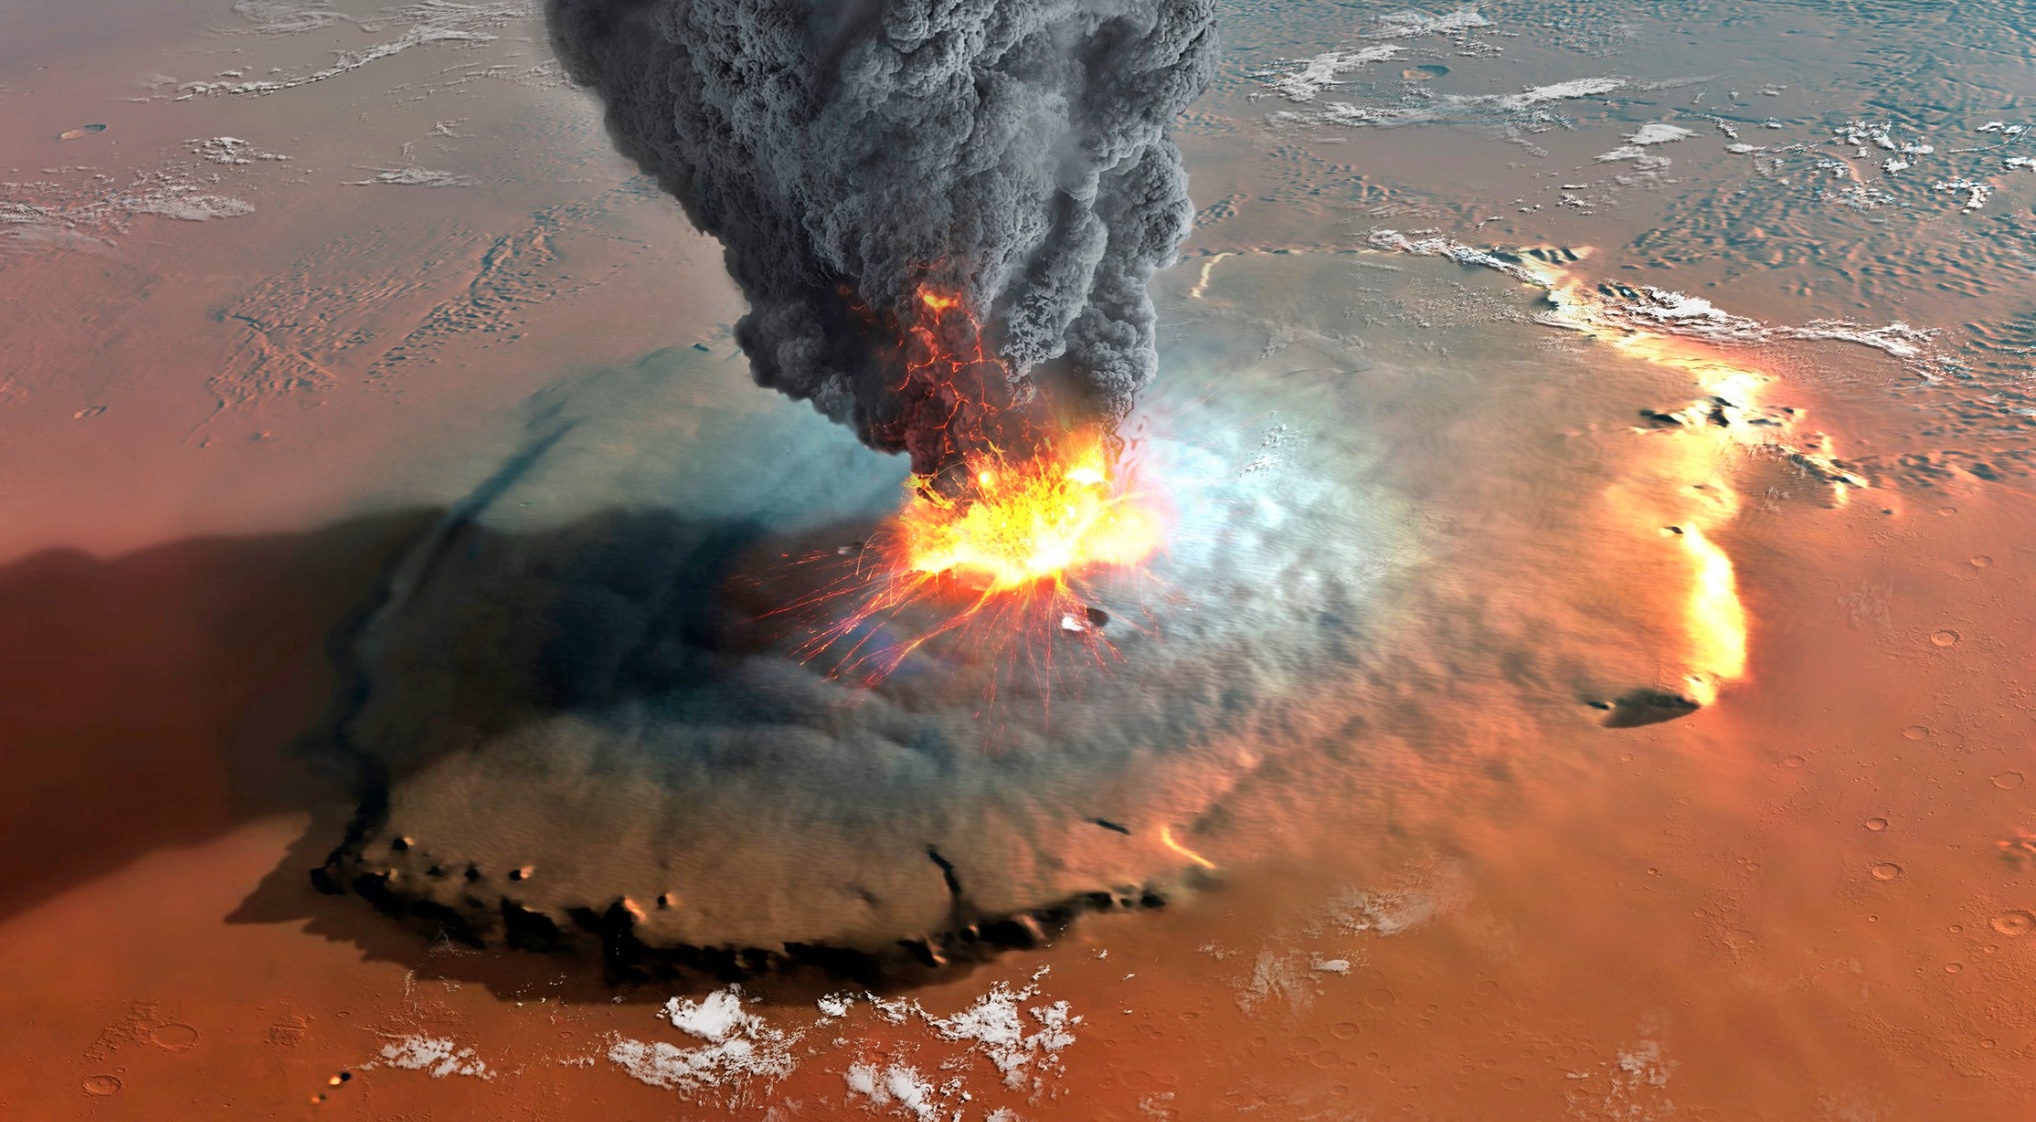 Hay volcanes activo en el planeta Marte? – Nuestroclima